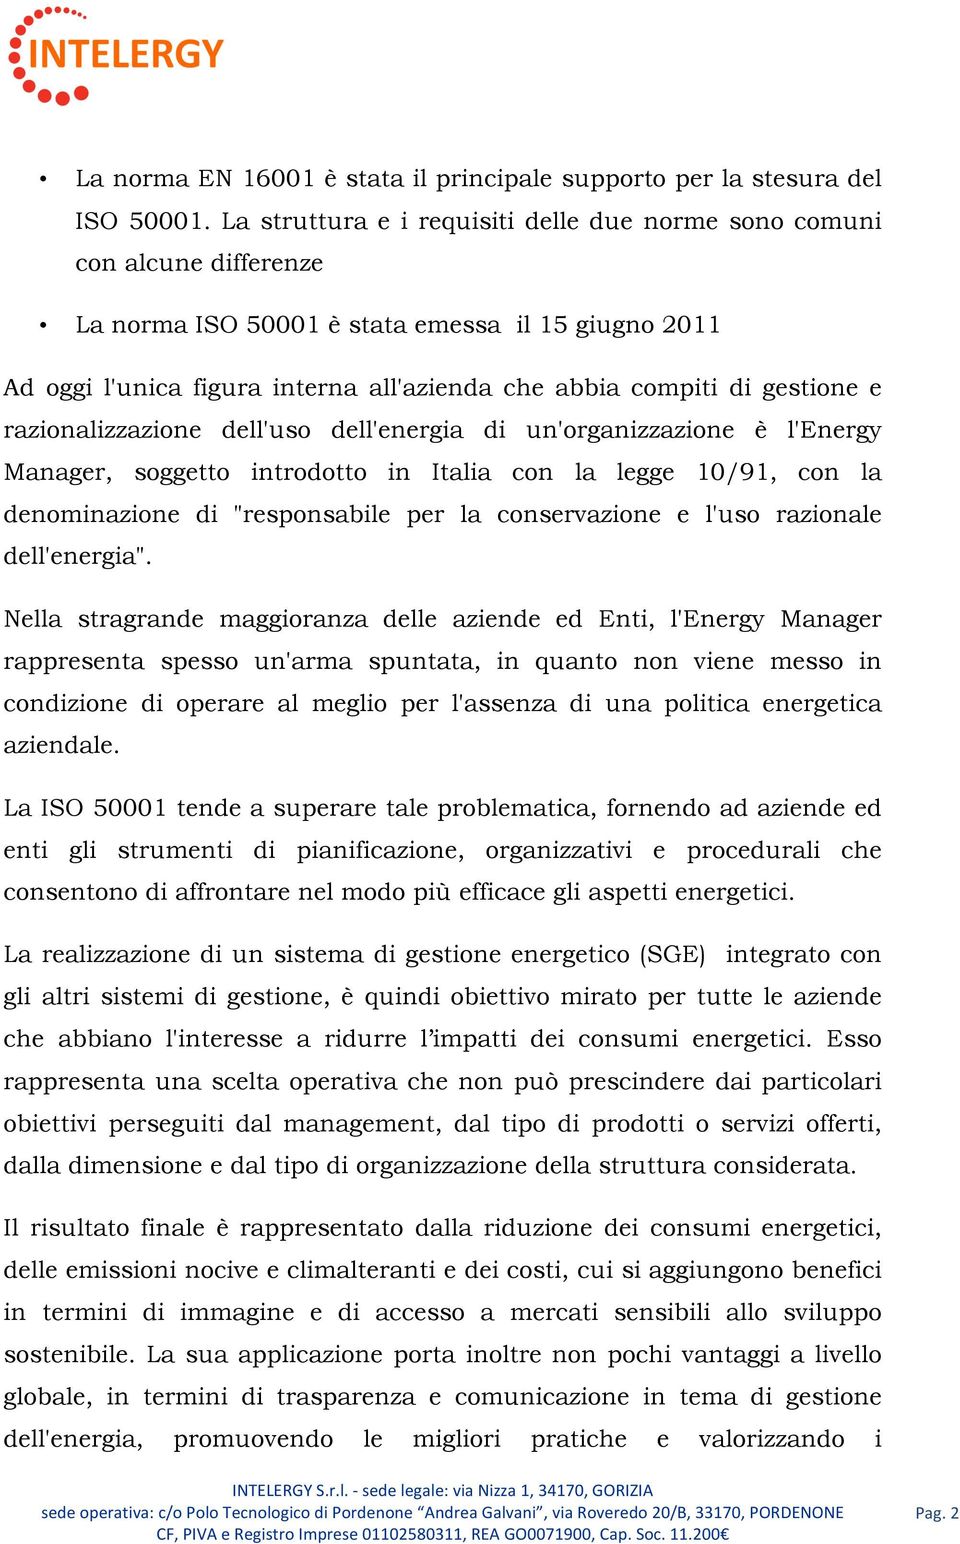 gestione e razionalizzazione dell'uso dell'energia di un'organizzazione è l'energy Manager, soggetto introdotto in Italia con la legge 10/91, con la denominazione di "responsabile per la